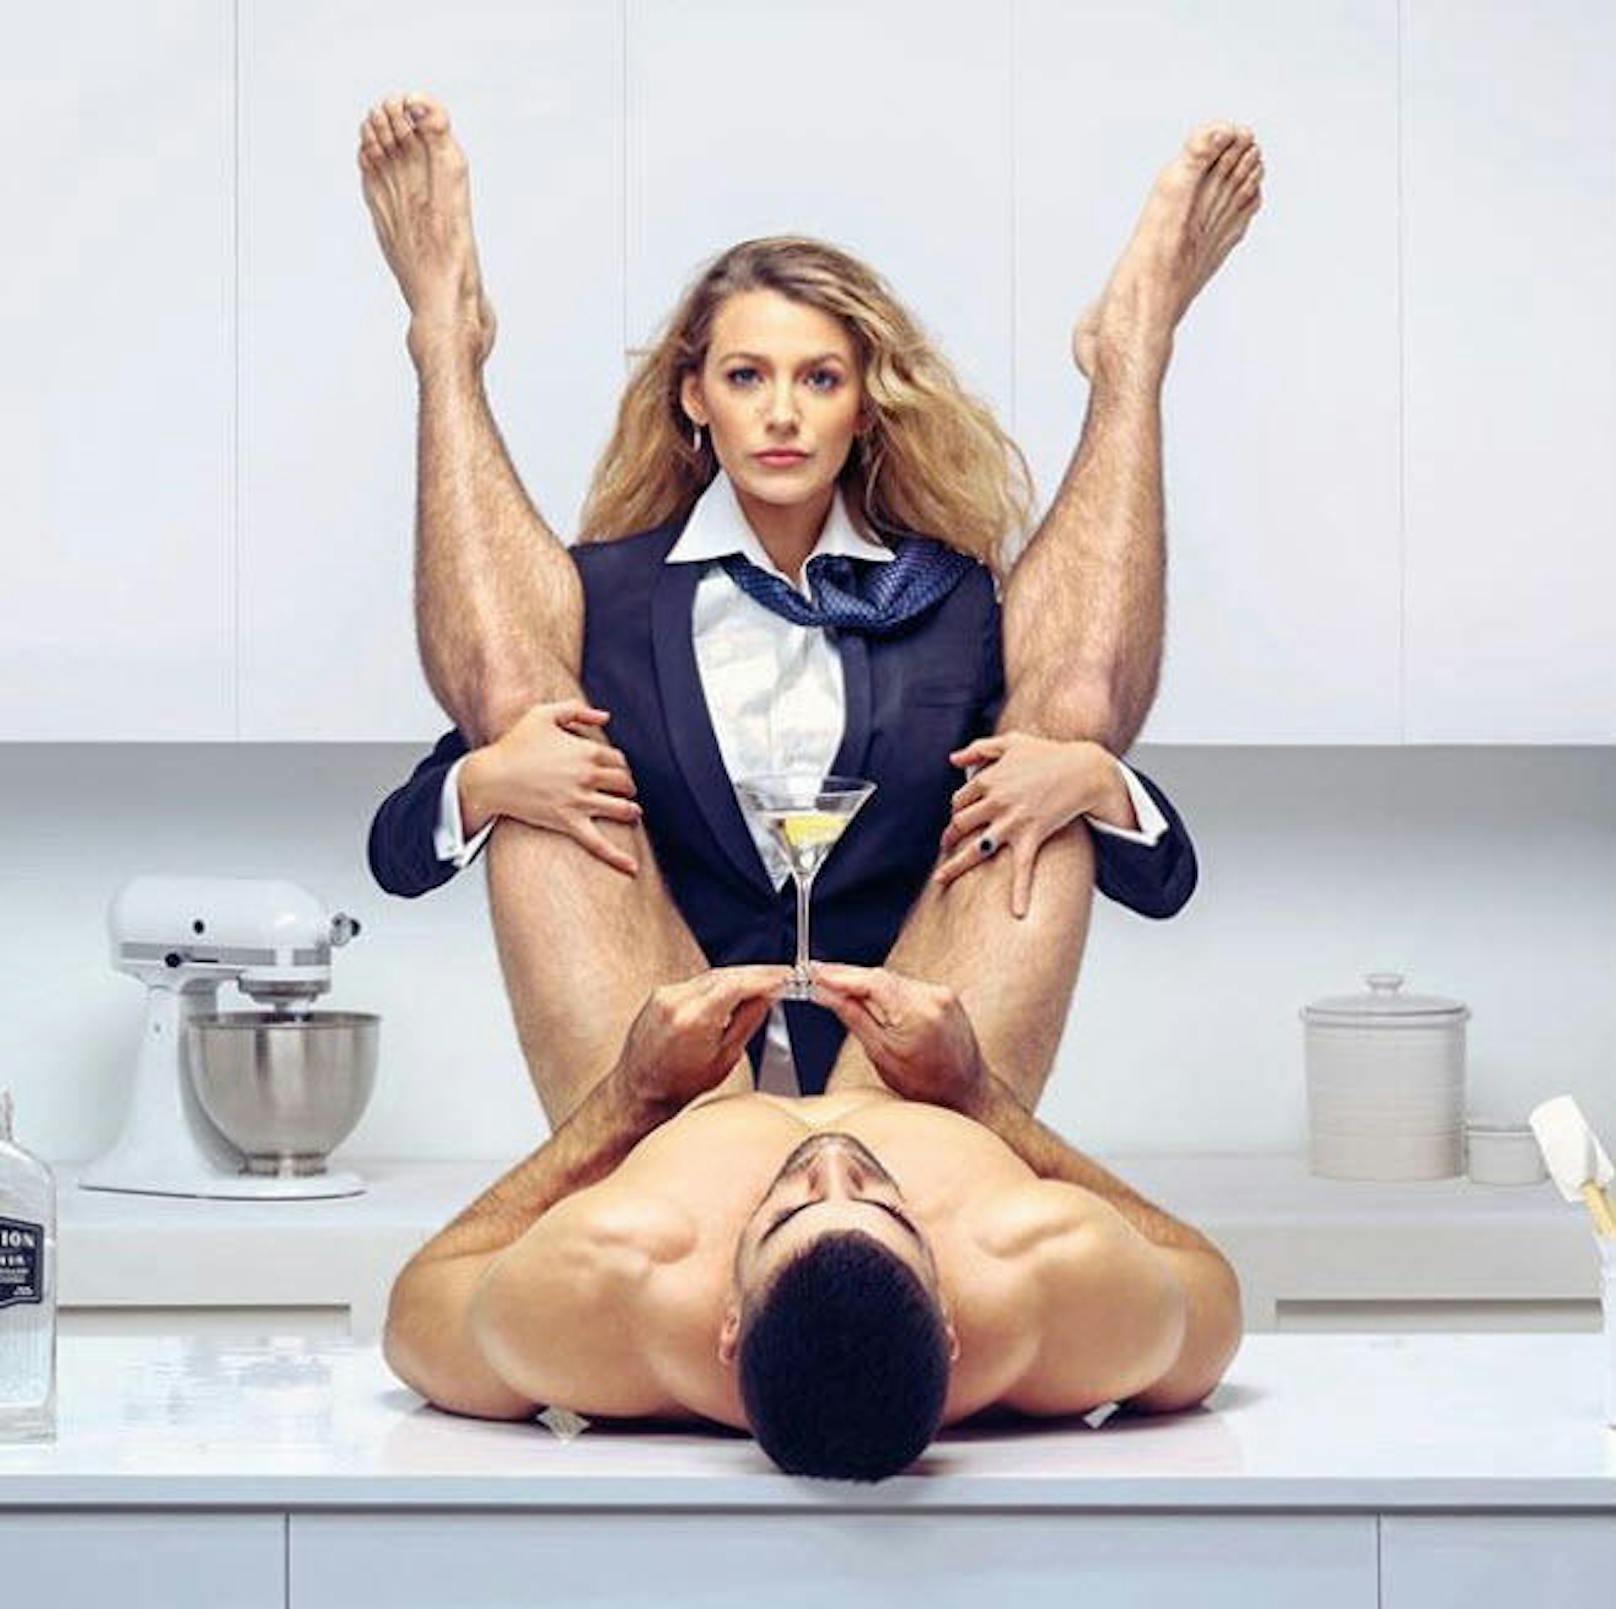 30.9.2018: Blake Lively lässt sich einen Martini von einem nackten Mann servieren. Ihr Ehemann Ryan Reynolds kommentiert: "Er scheint nett zu sein."